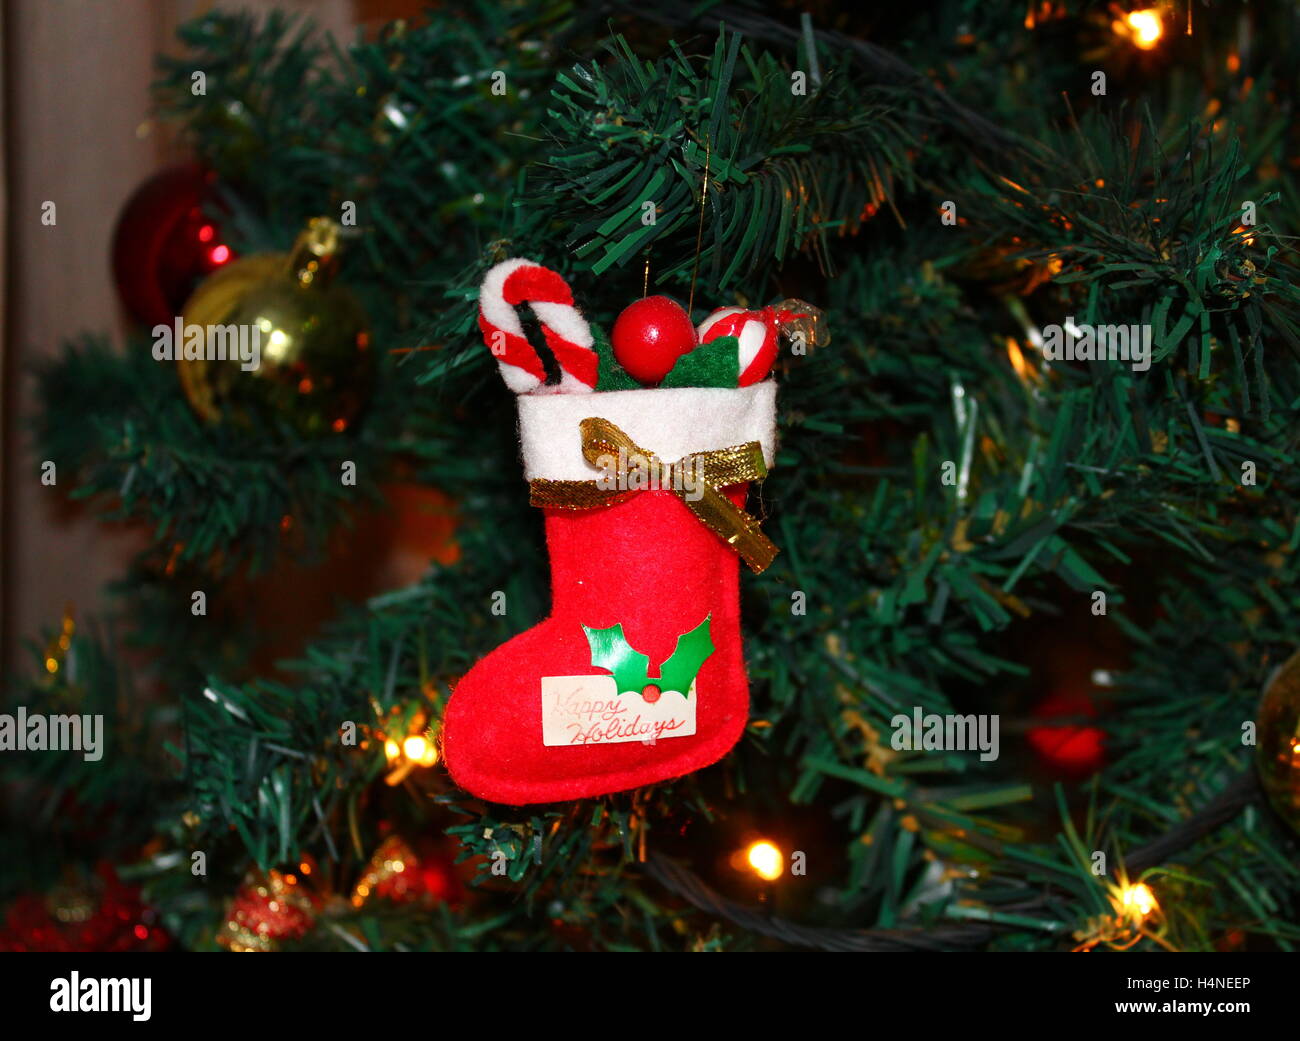 Christmas sock decoration hanging on Christmas tree Stock Photo